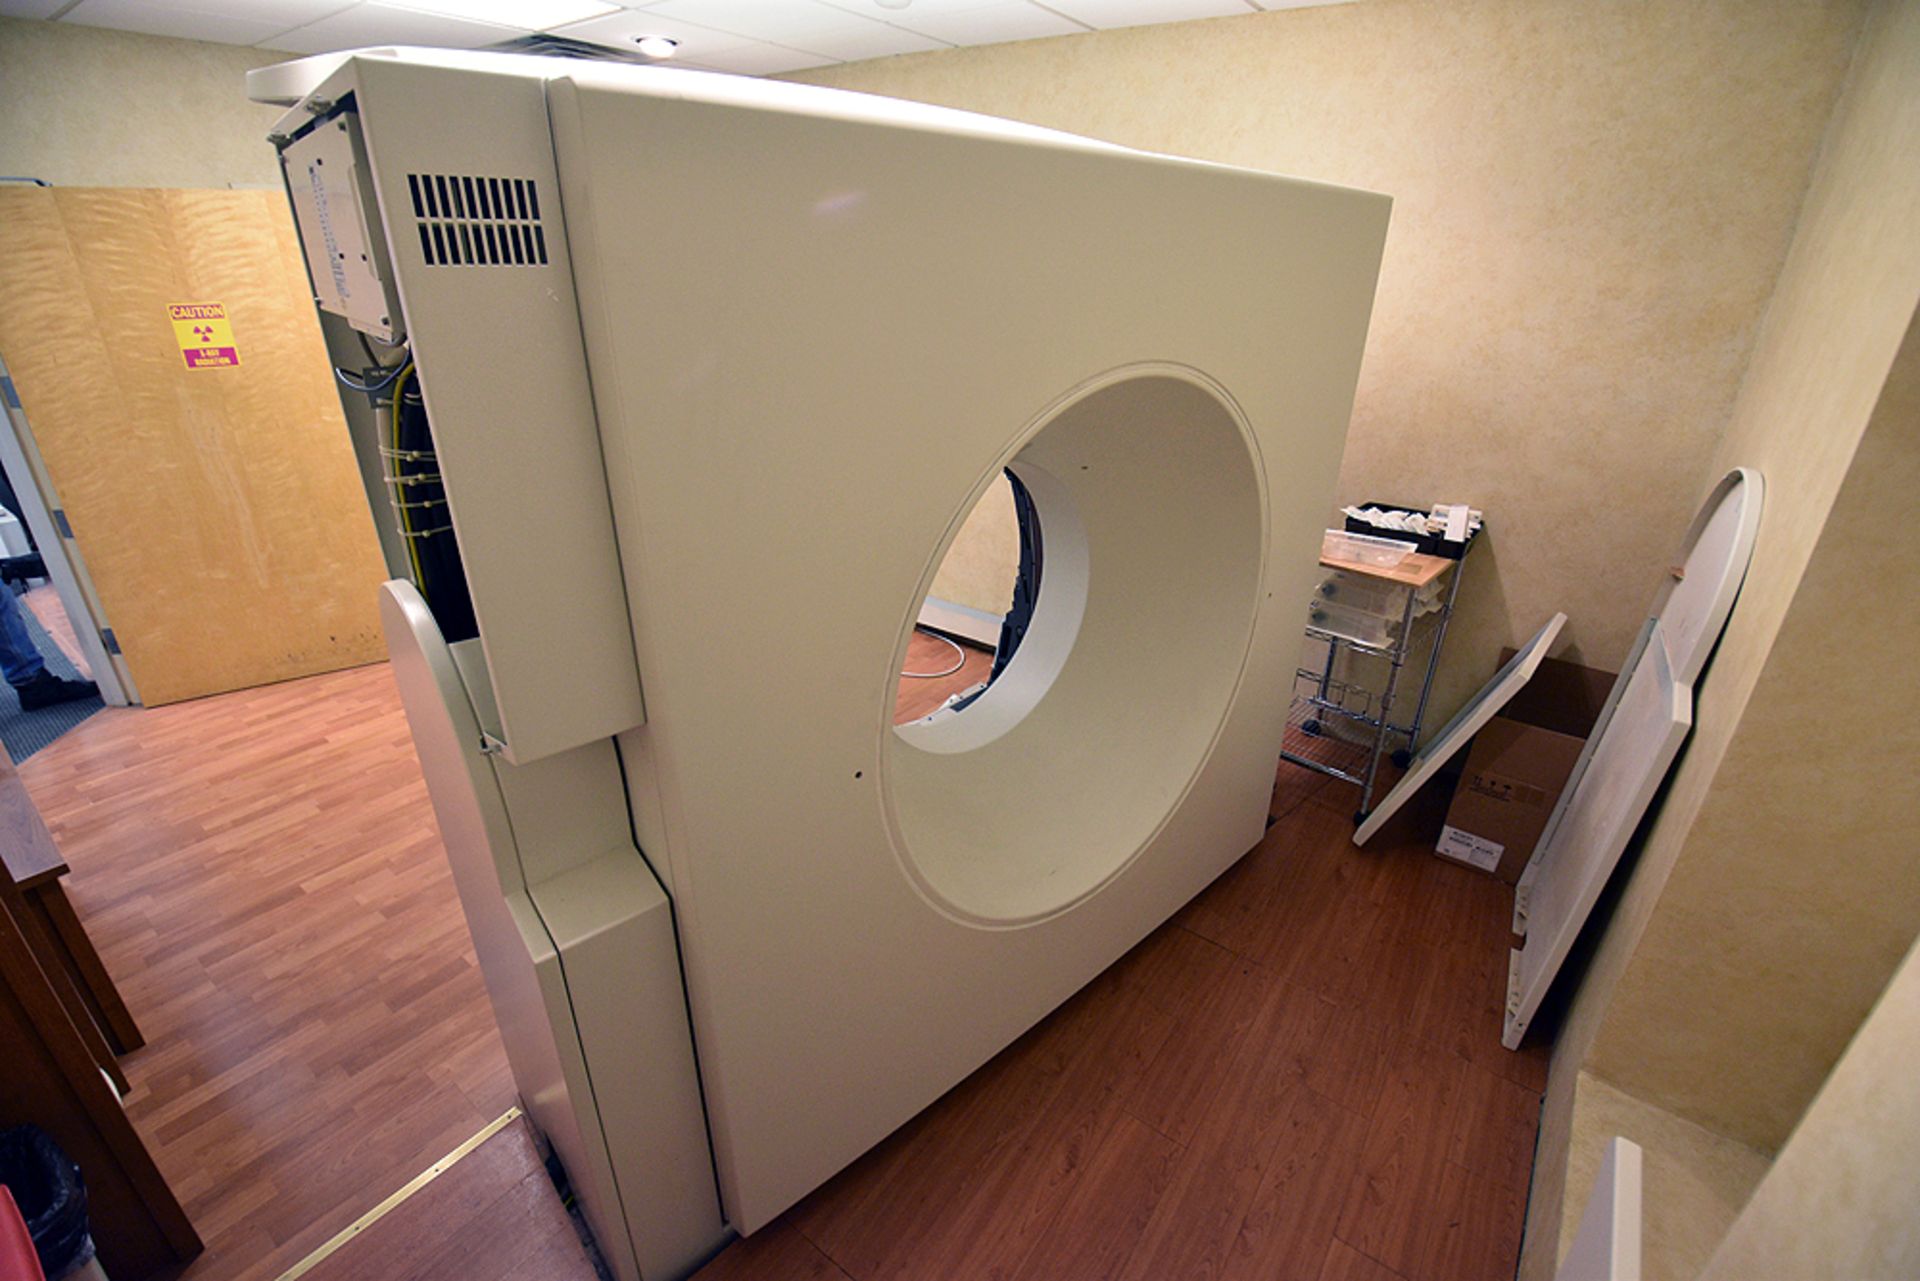 Siemens CT Scanner - Image 11 of 48